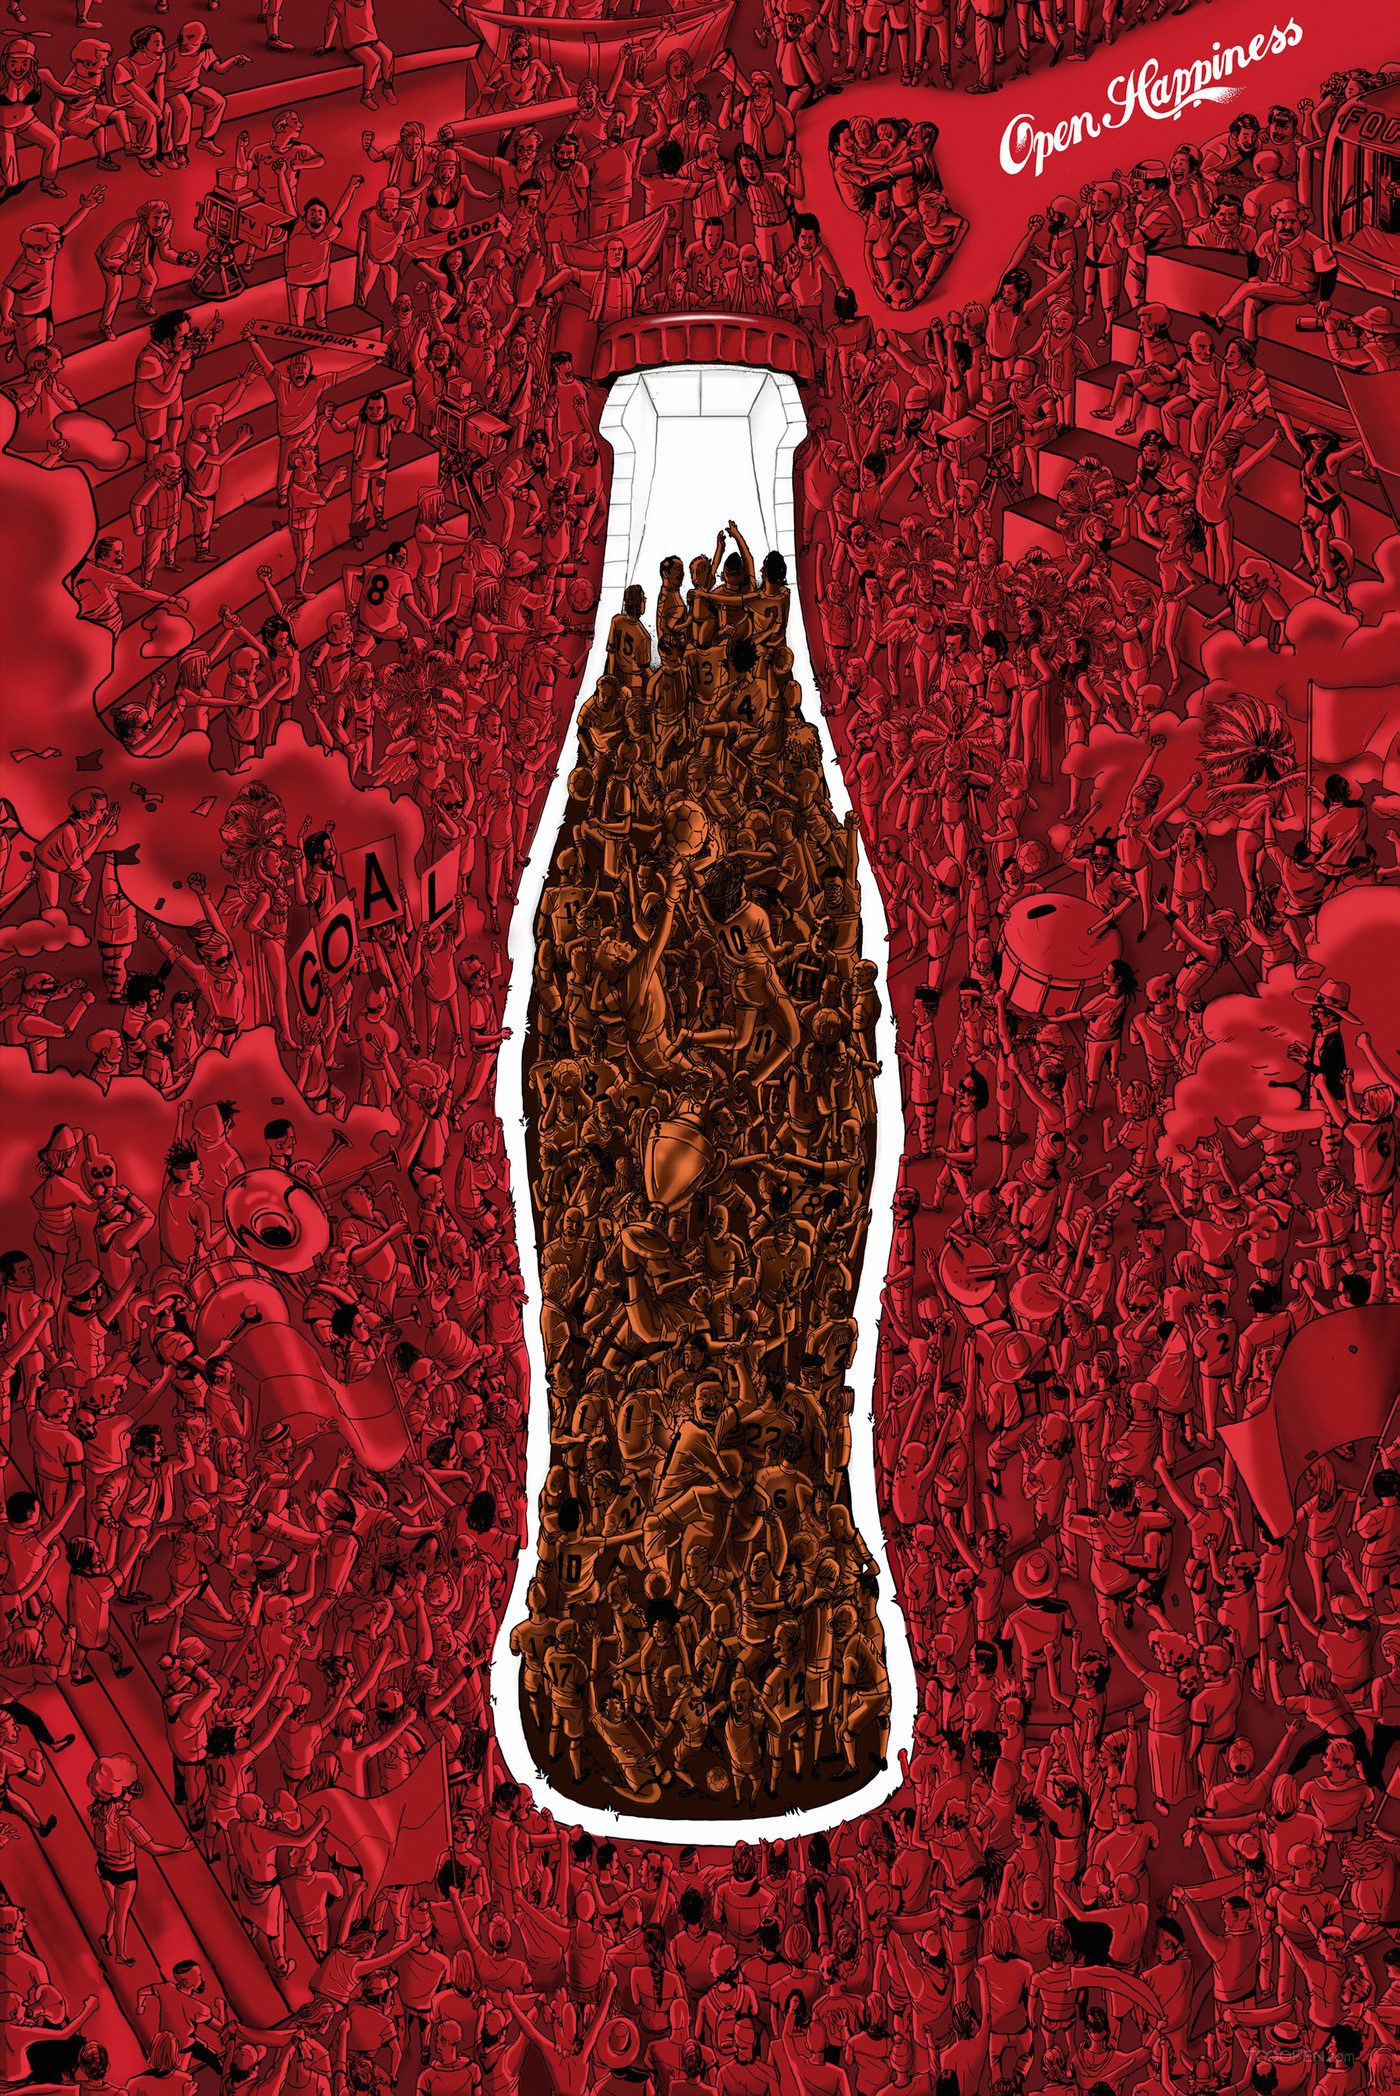 可口可乐碳酸饮料平面广告海报设计欣赏-03